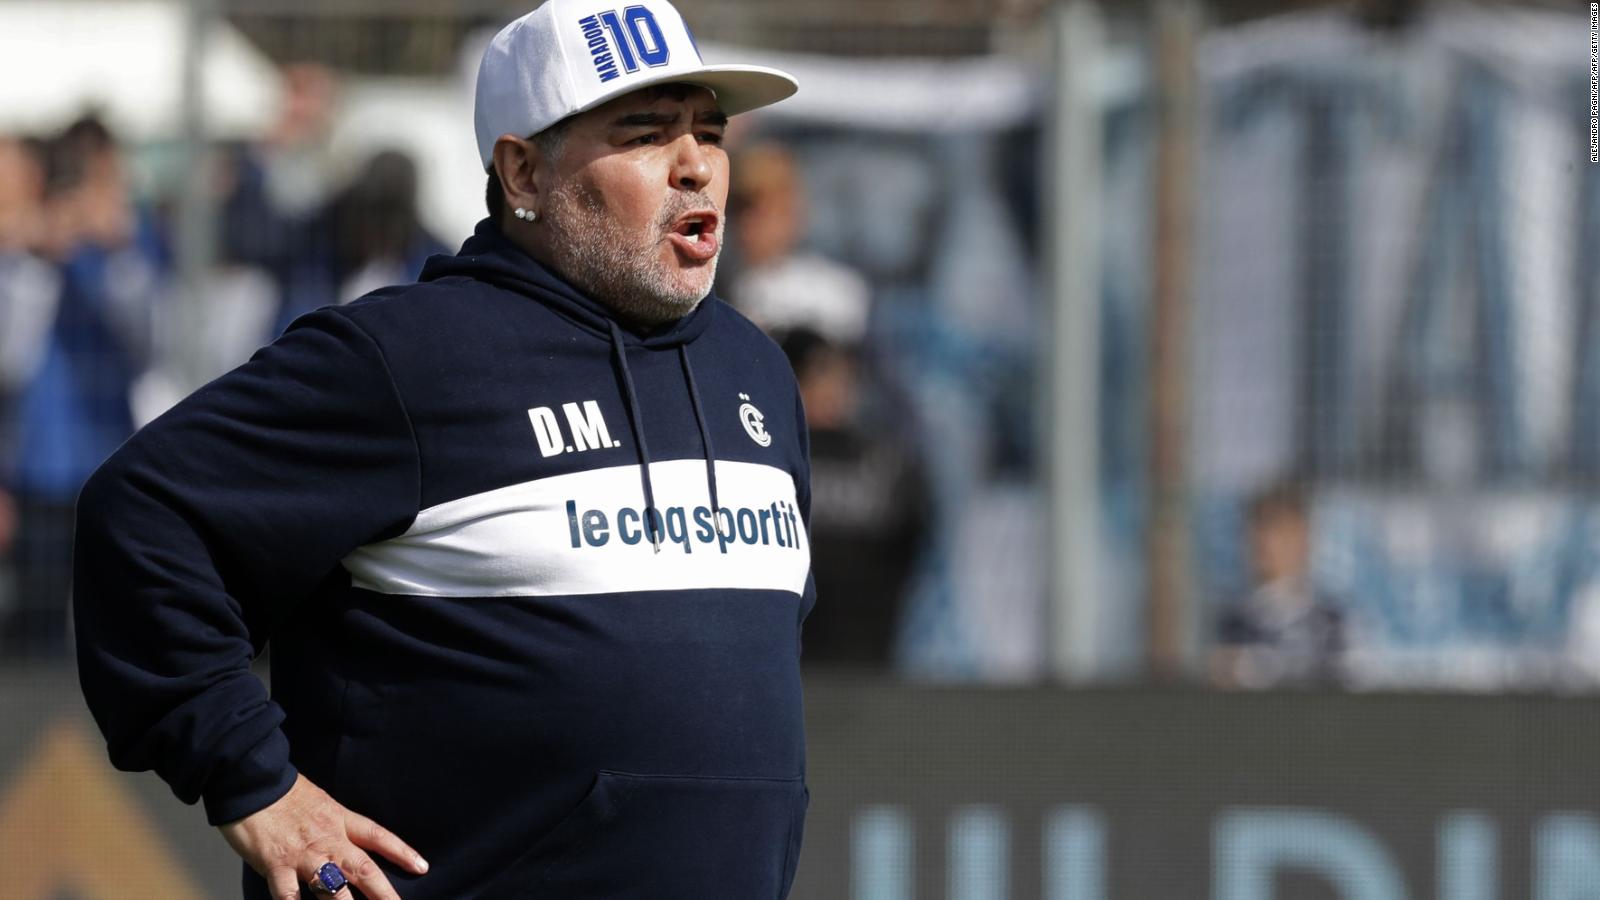 Diego Maradona es aplaudido como técnico de Gimnasia y Esgrima de la Plata | Video | CNN